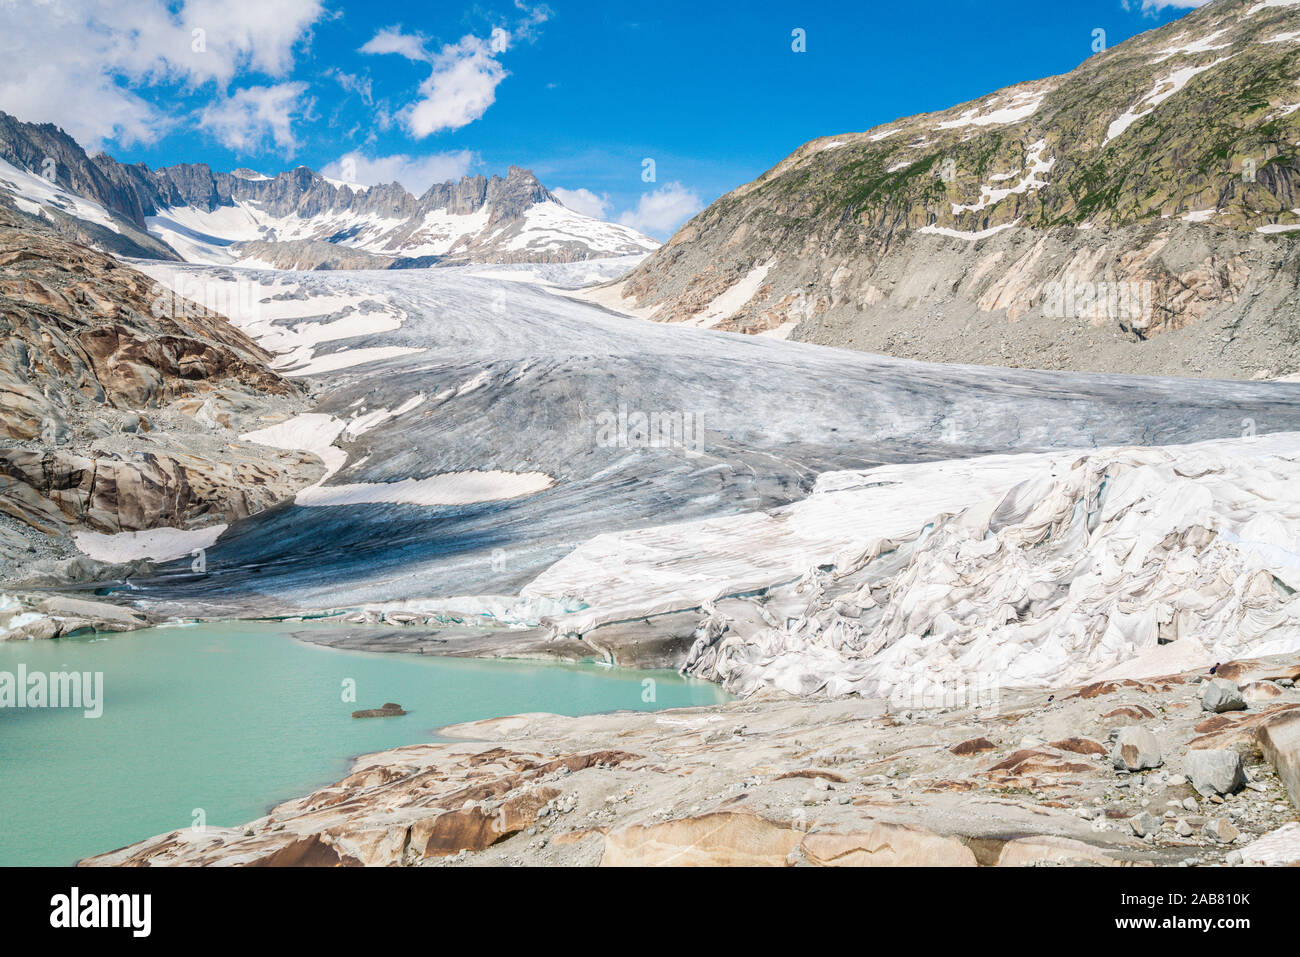 Il lago glaciale e il ghiacciaio del Rodano parzialmente protetti dalle coperte a fusione lenta, Gletsch, Canton Vallese, Svizzera, Europa Foto Stock